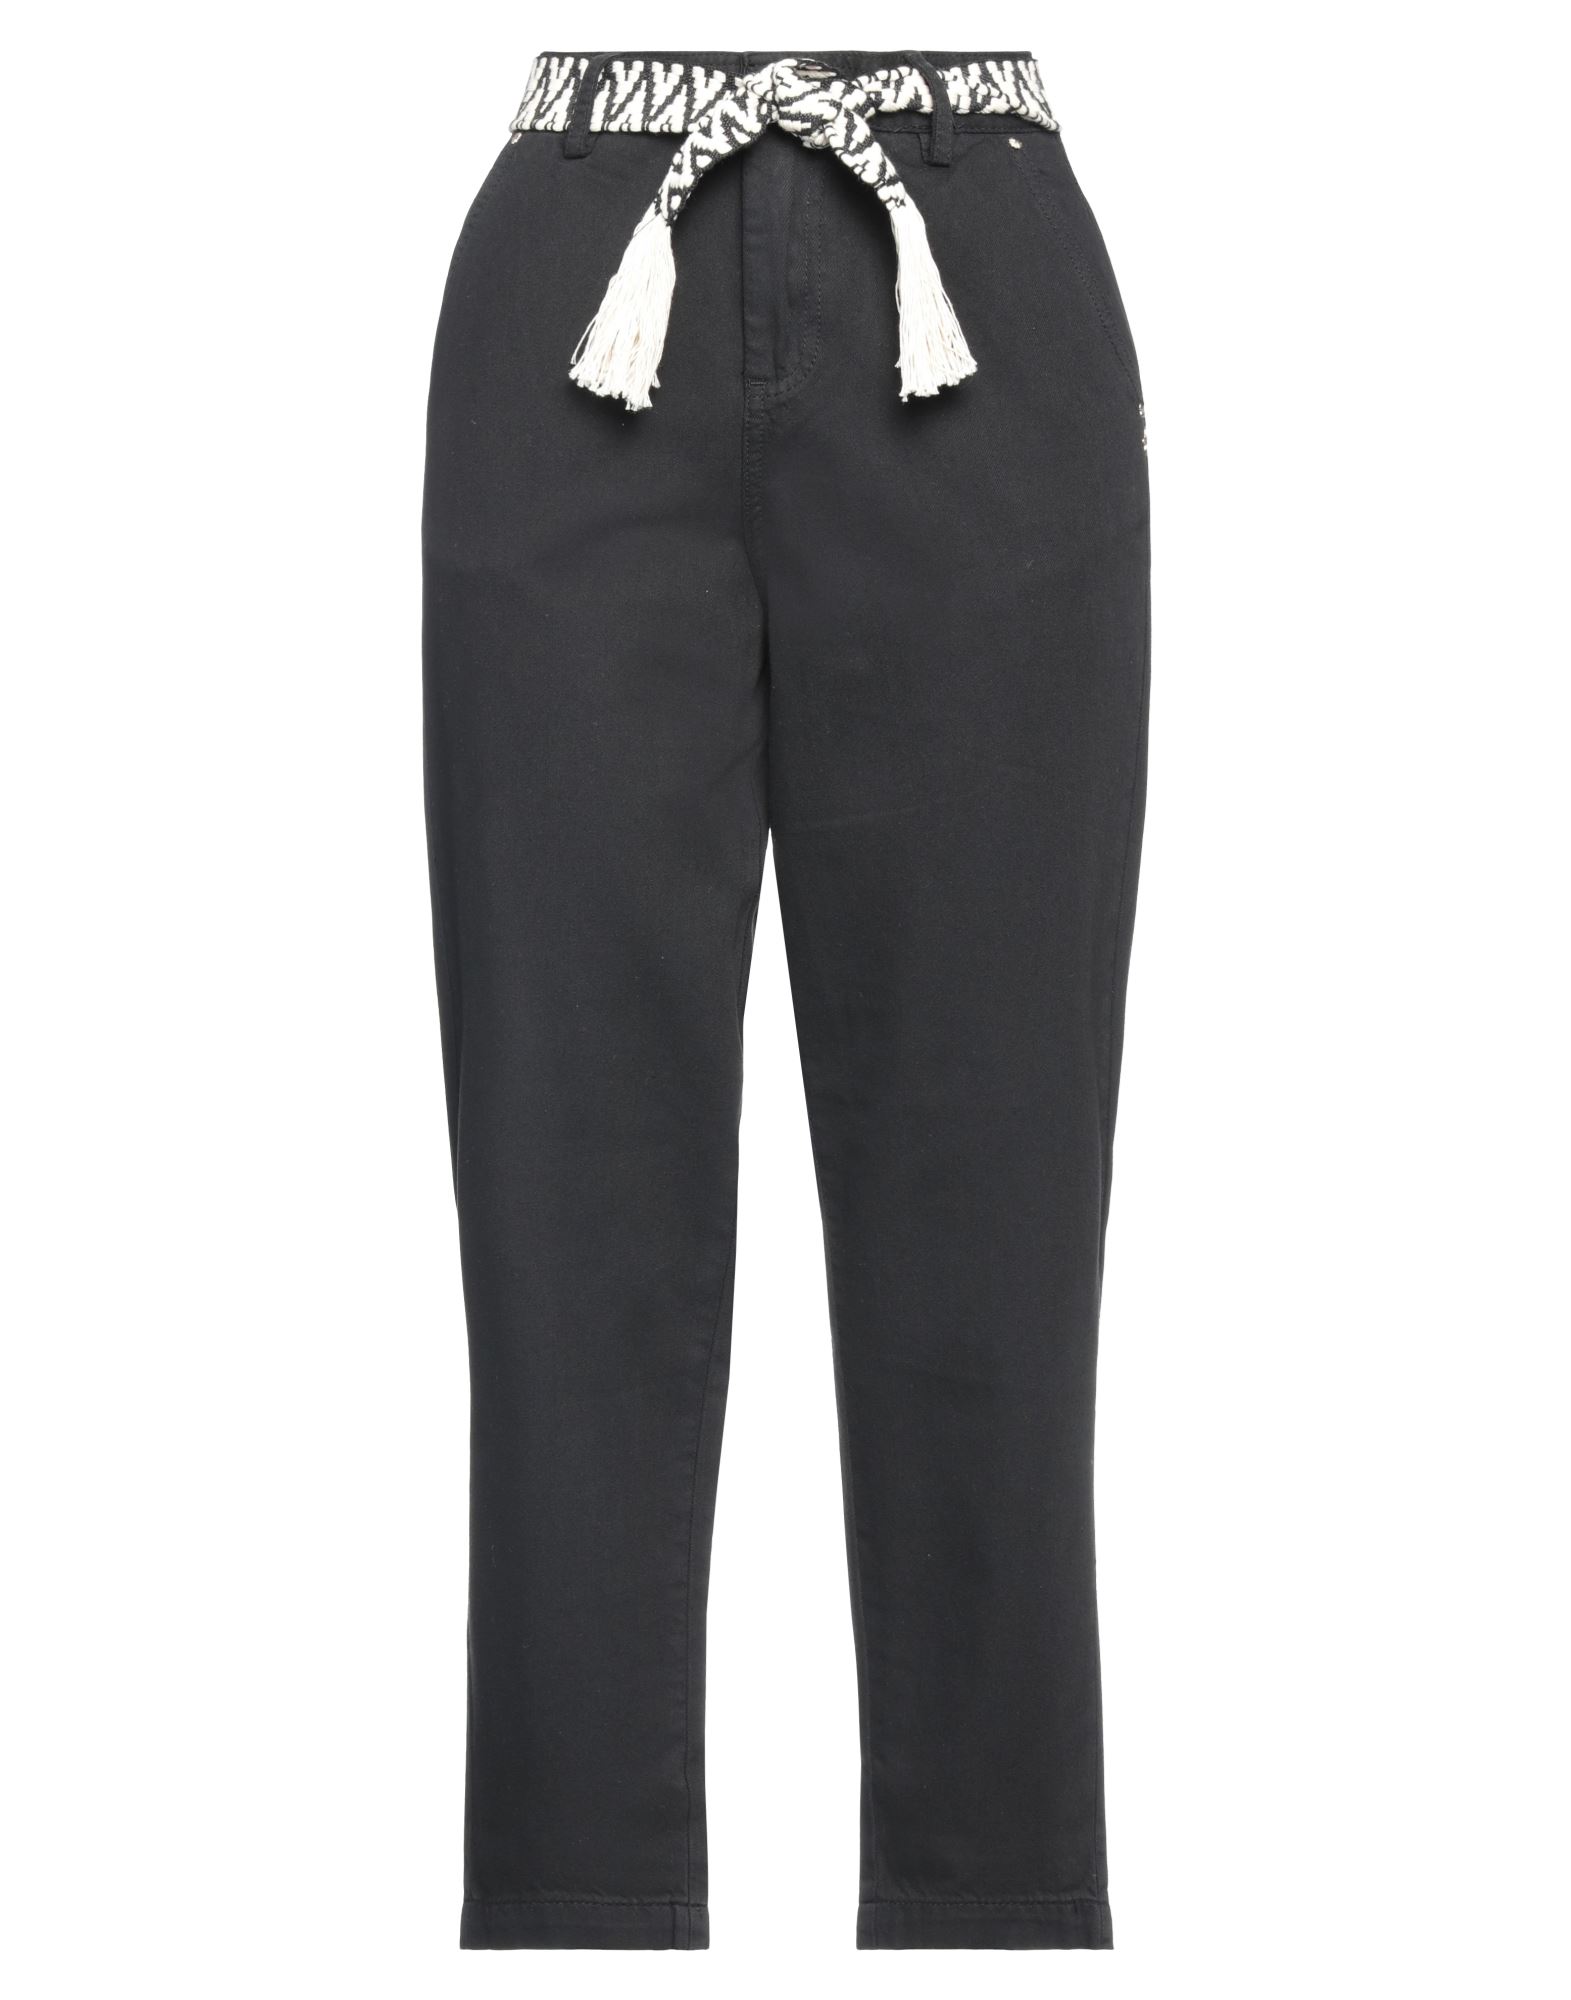 Gaudì Woman Pants Black Size 27 Cotton, Lyocell